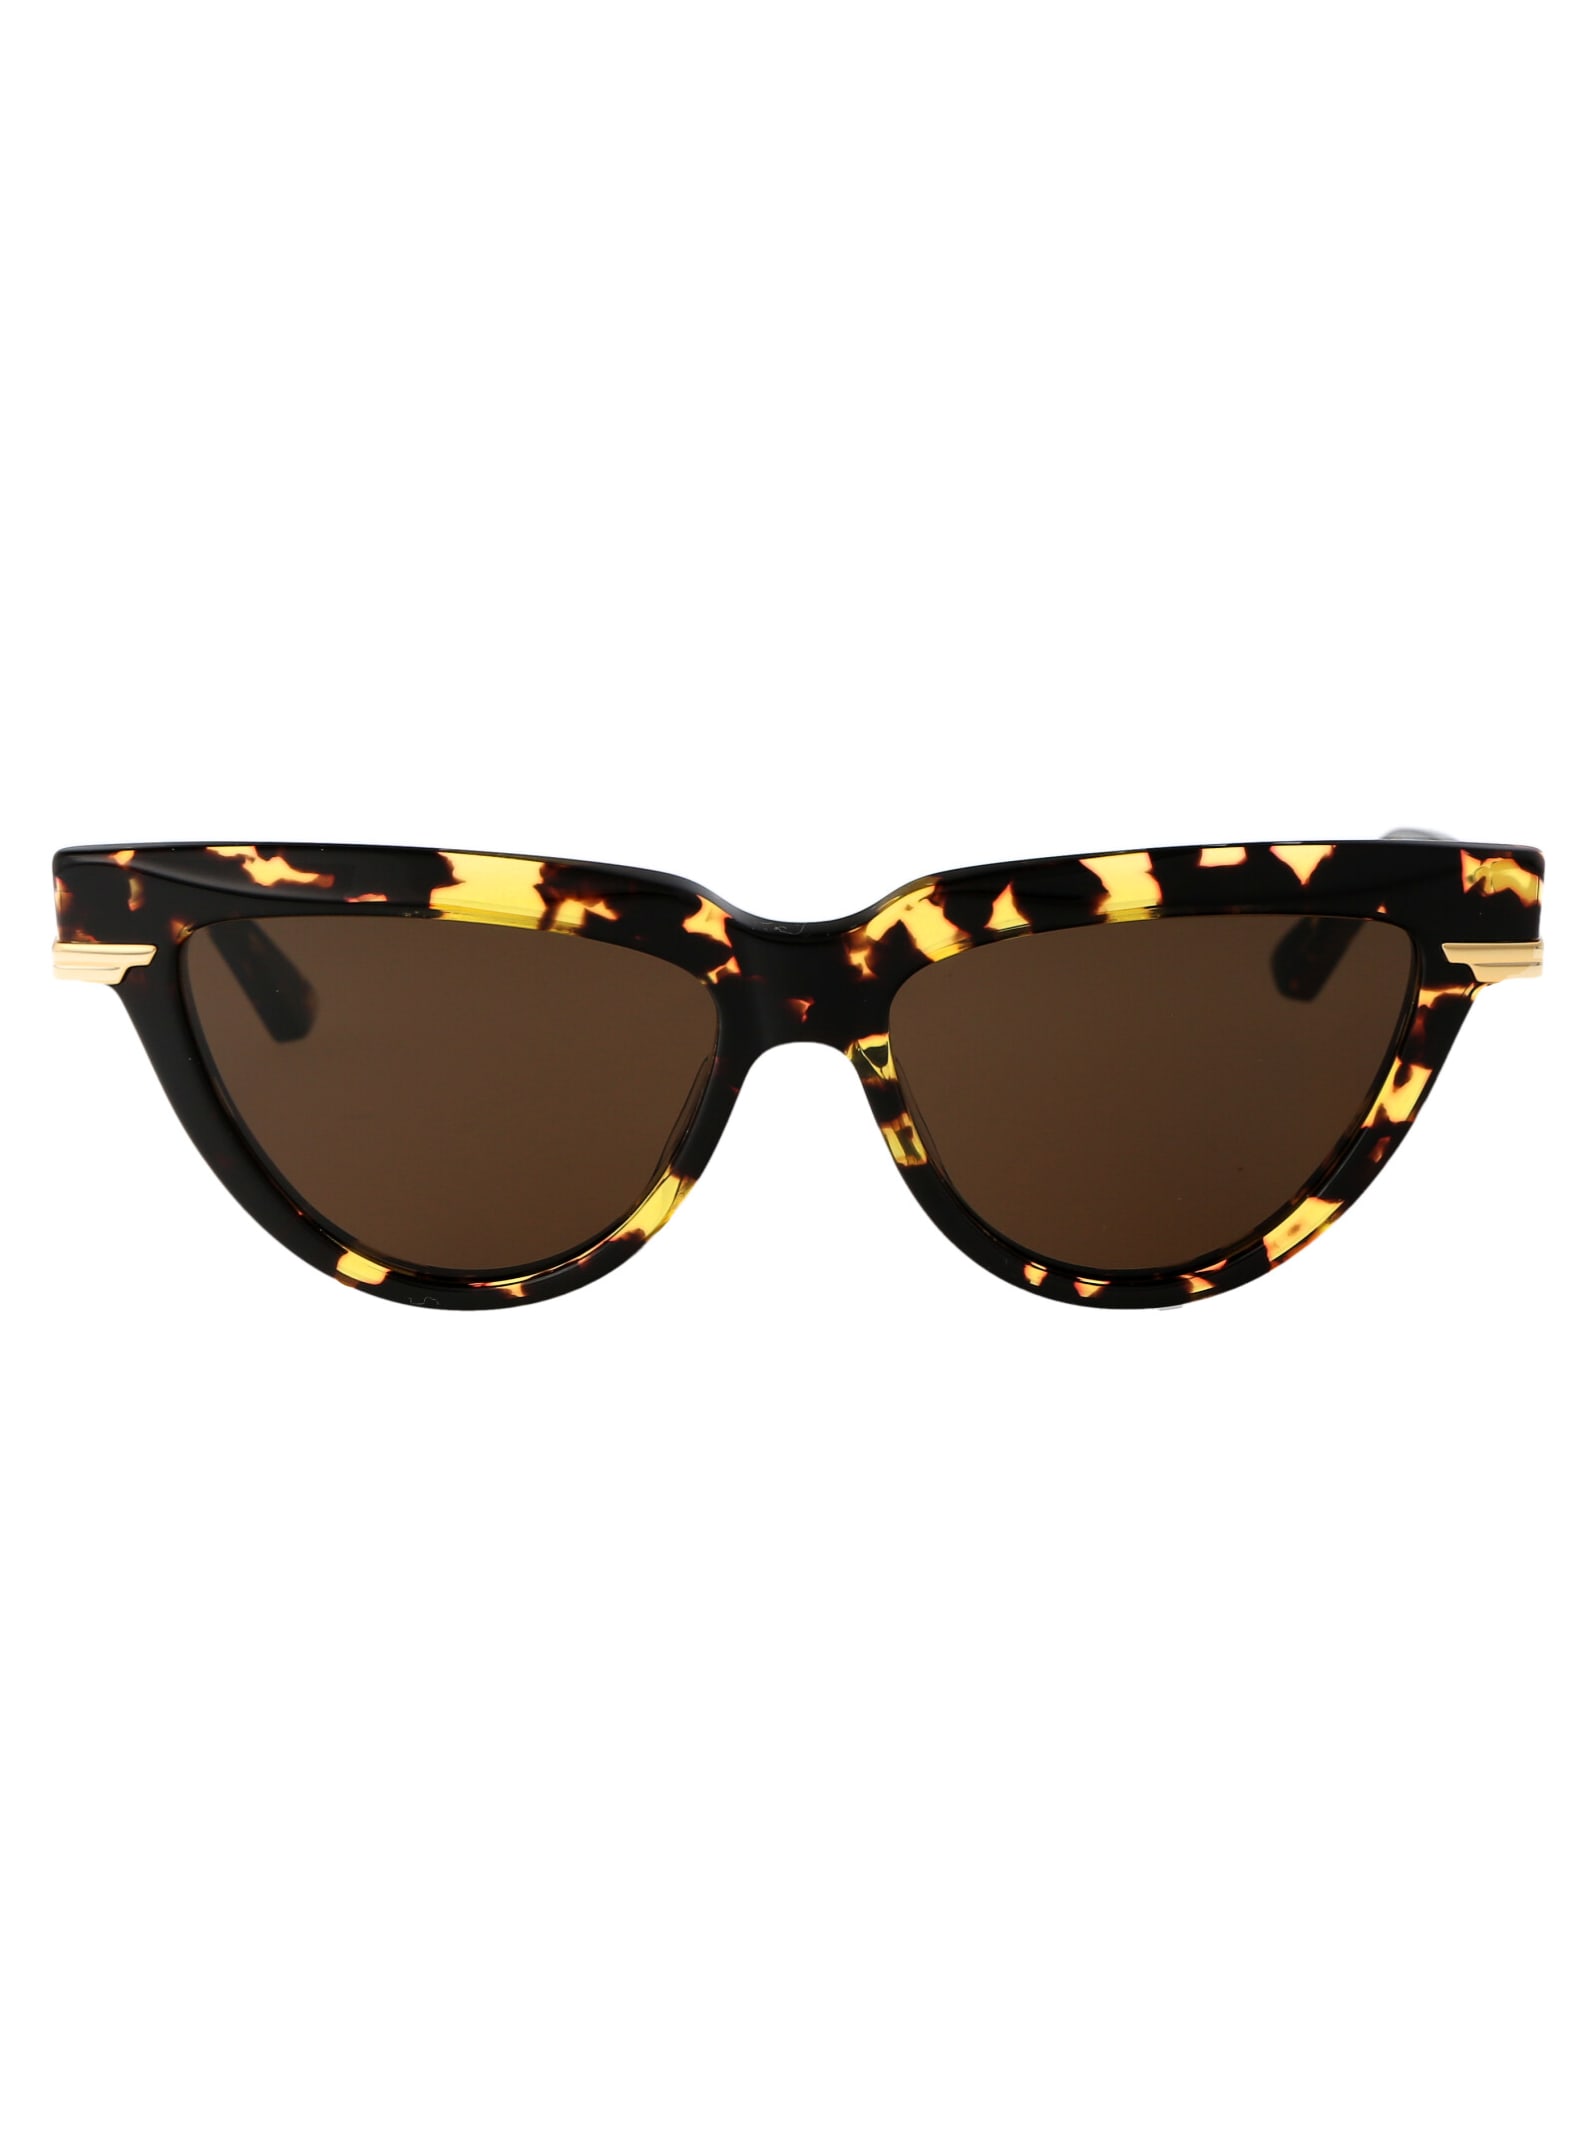 Bv1265s Sunglasses